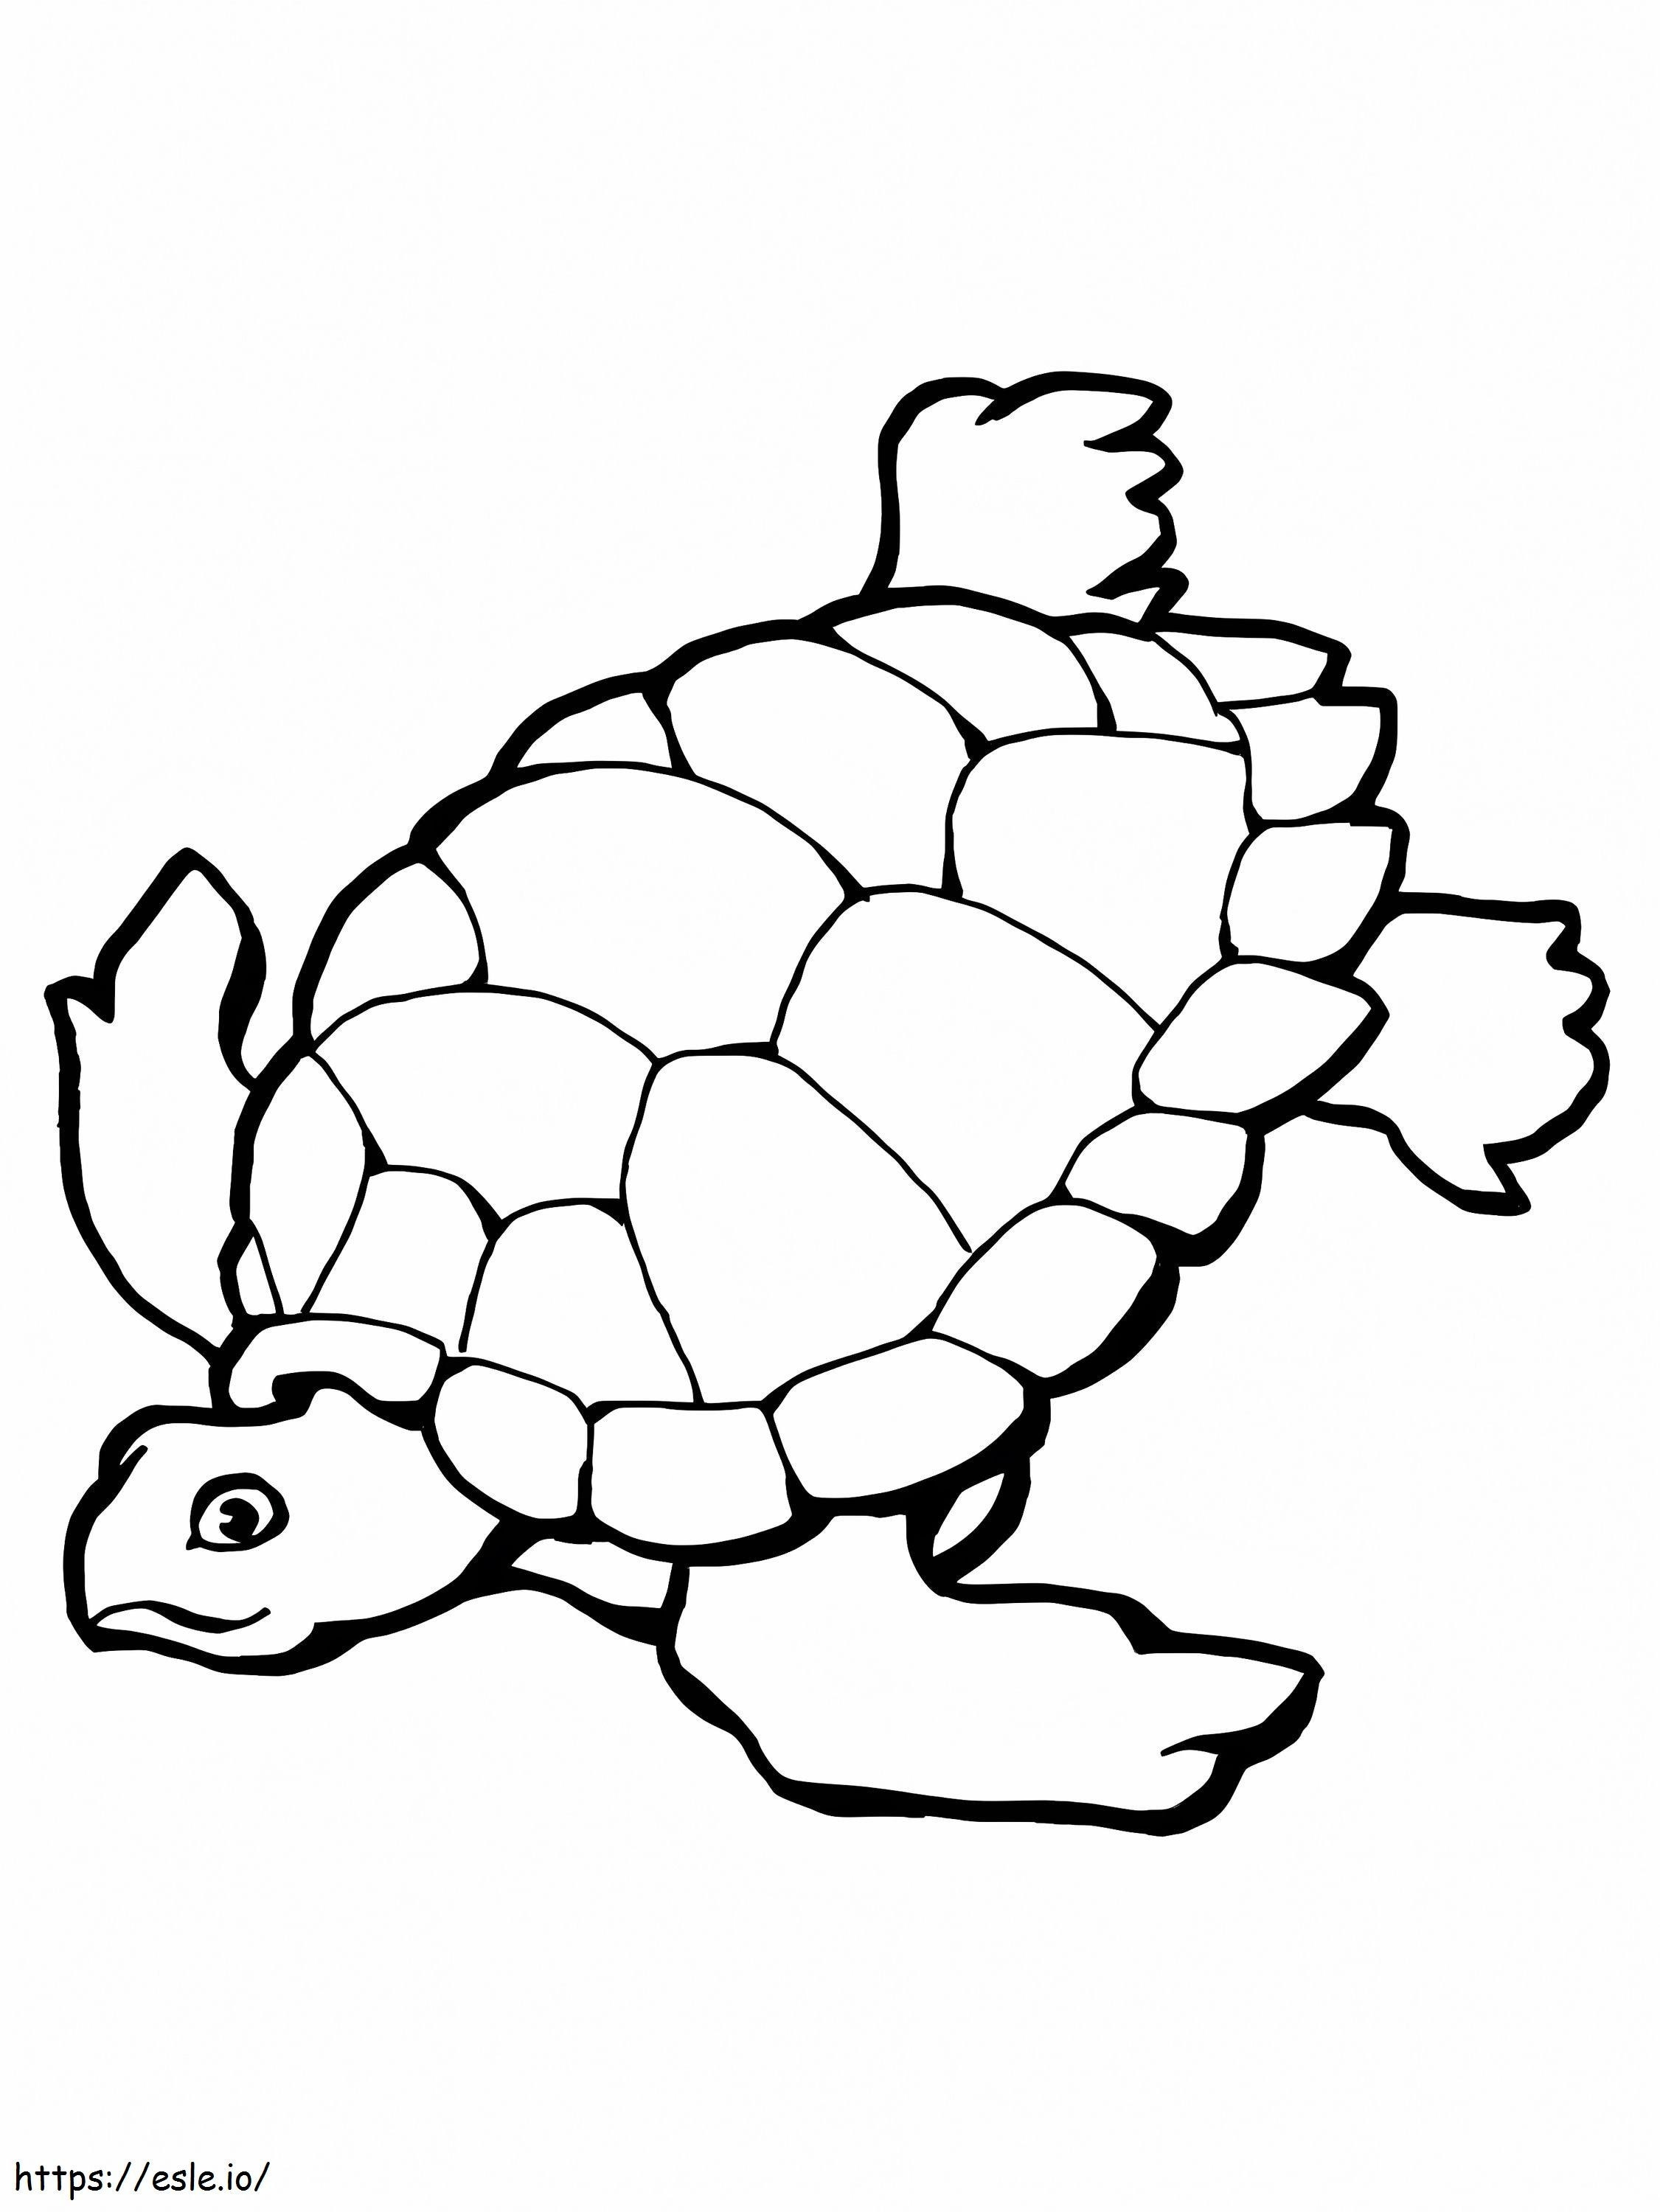 Natação de tartarugas marinhas para colorir